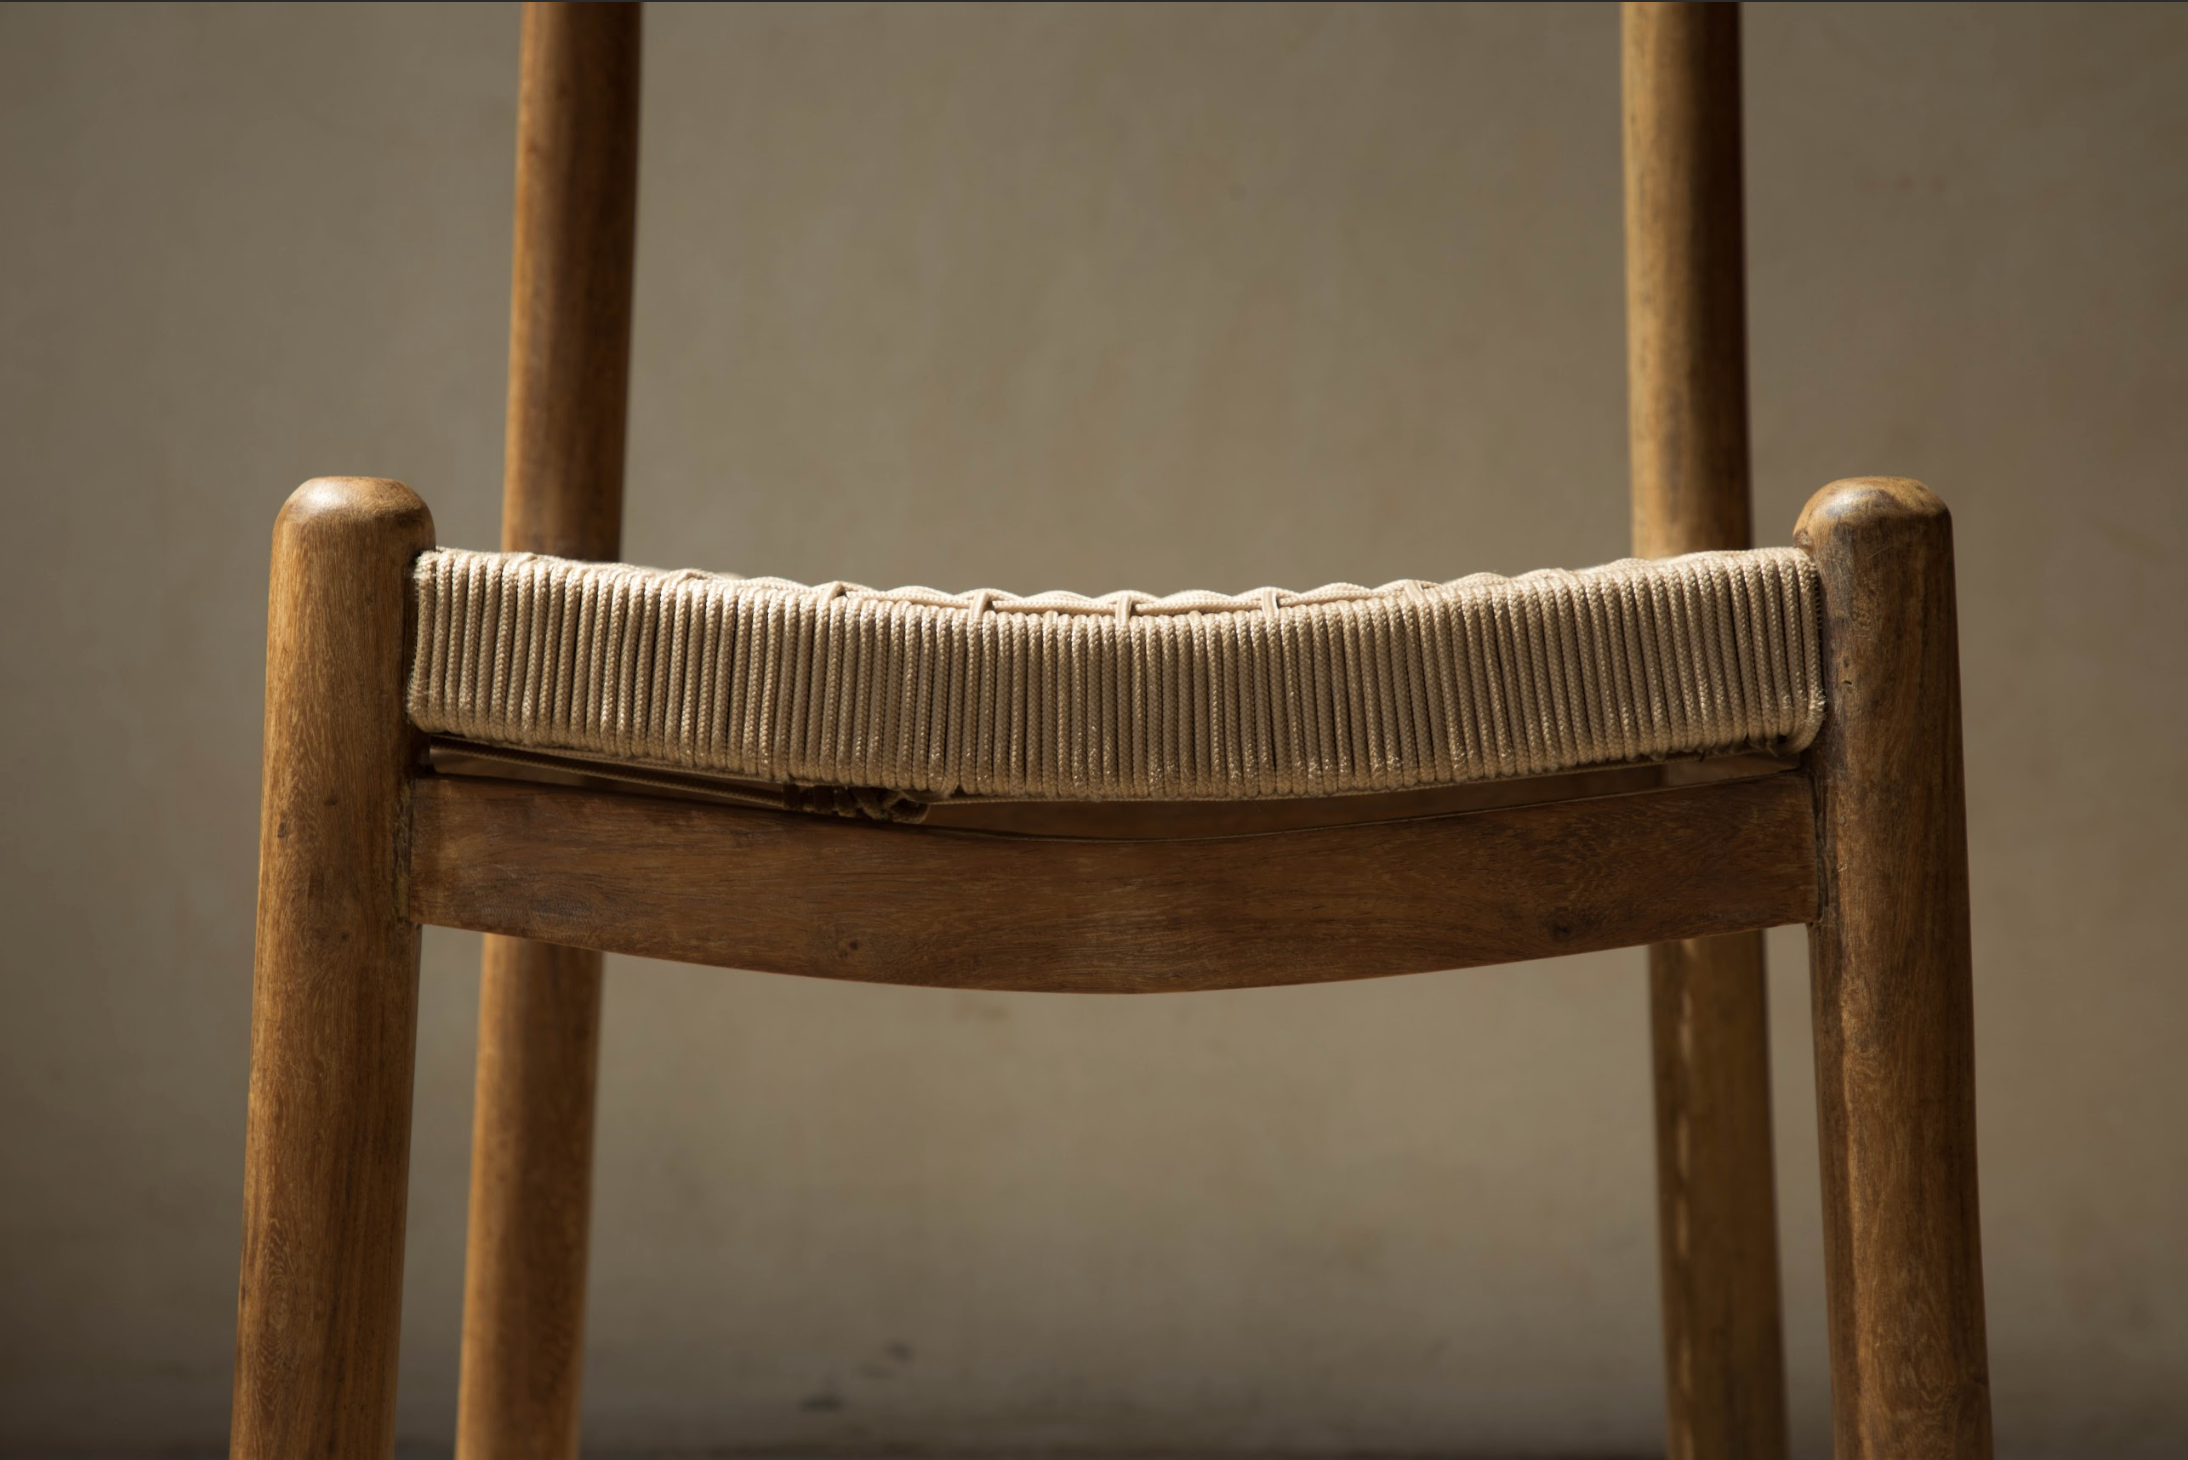 Sirva Chair